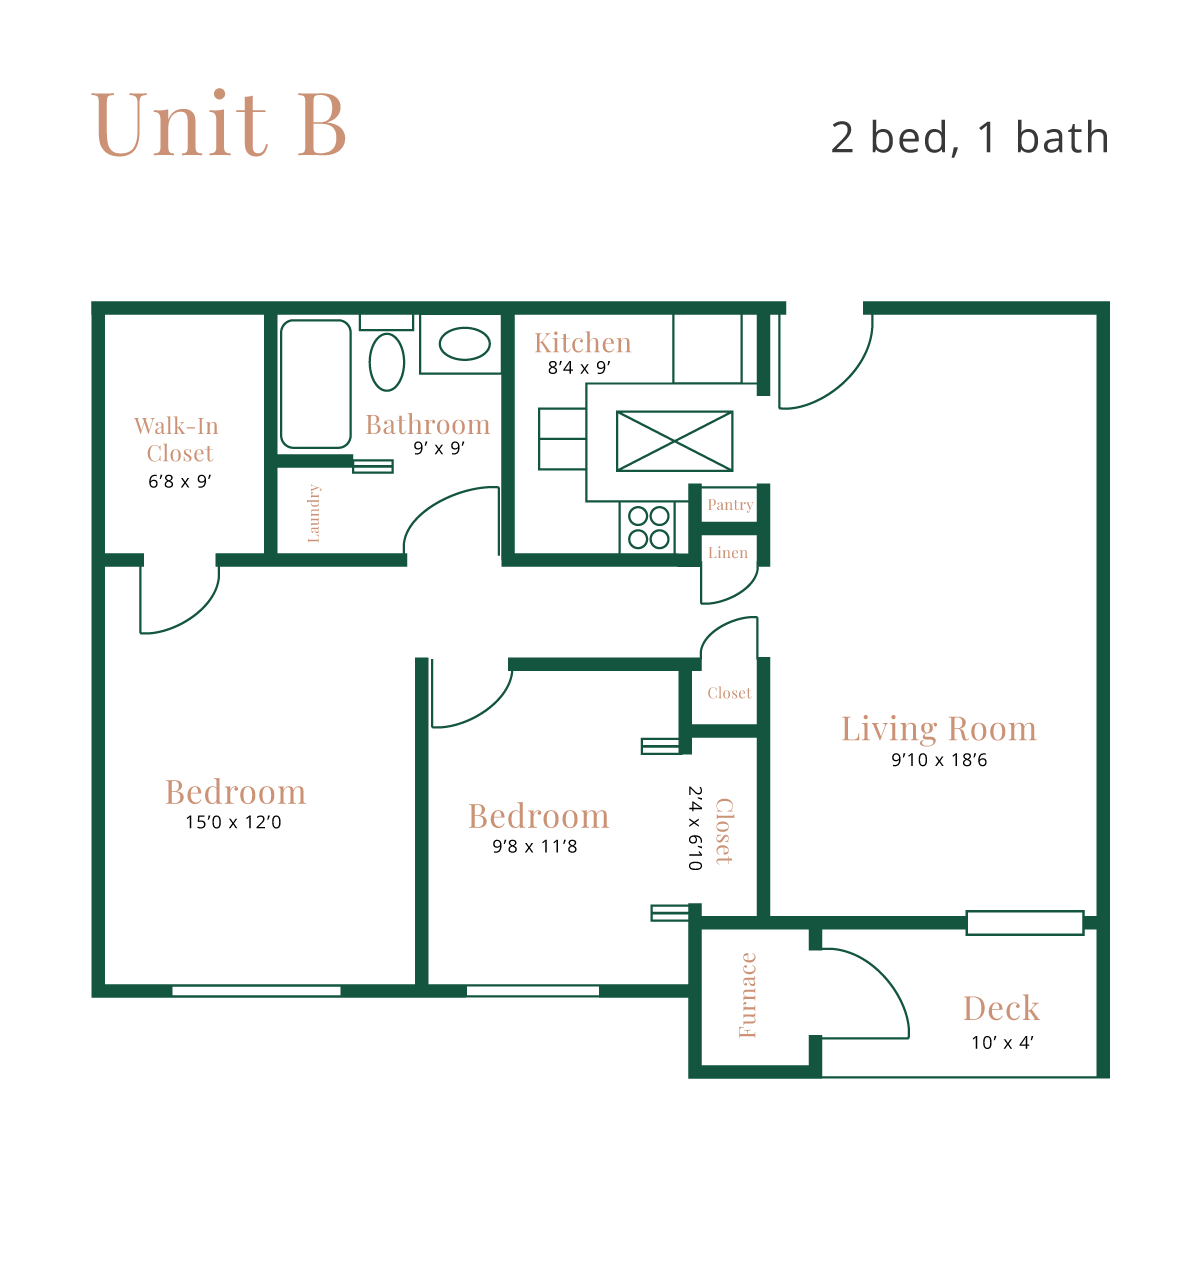 Unit B - 2 bed, 1 bath